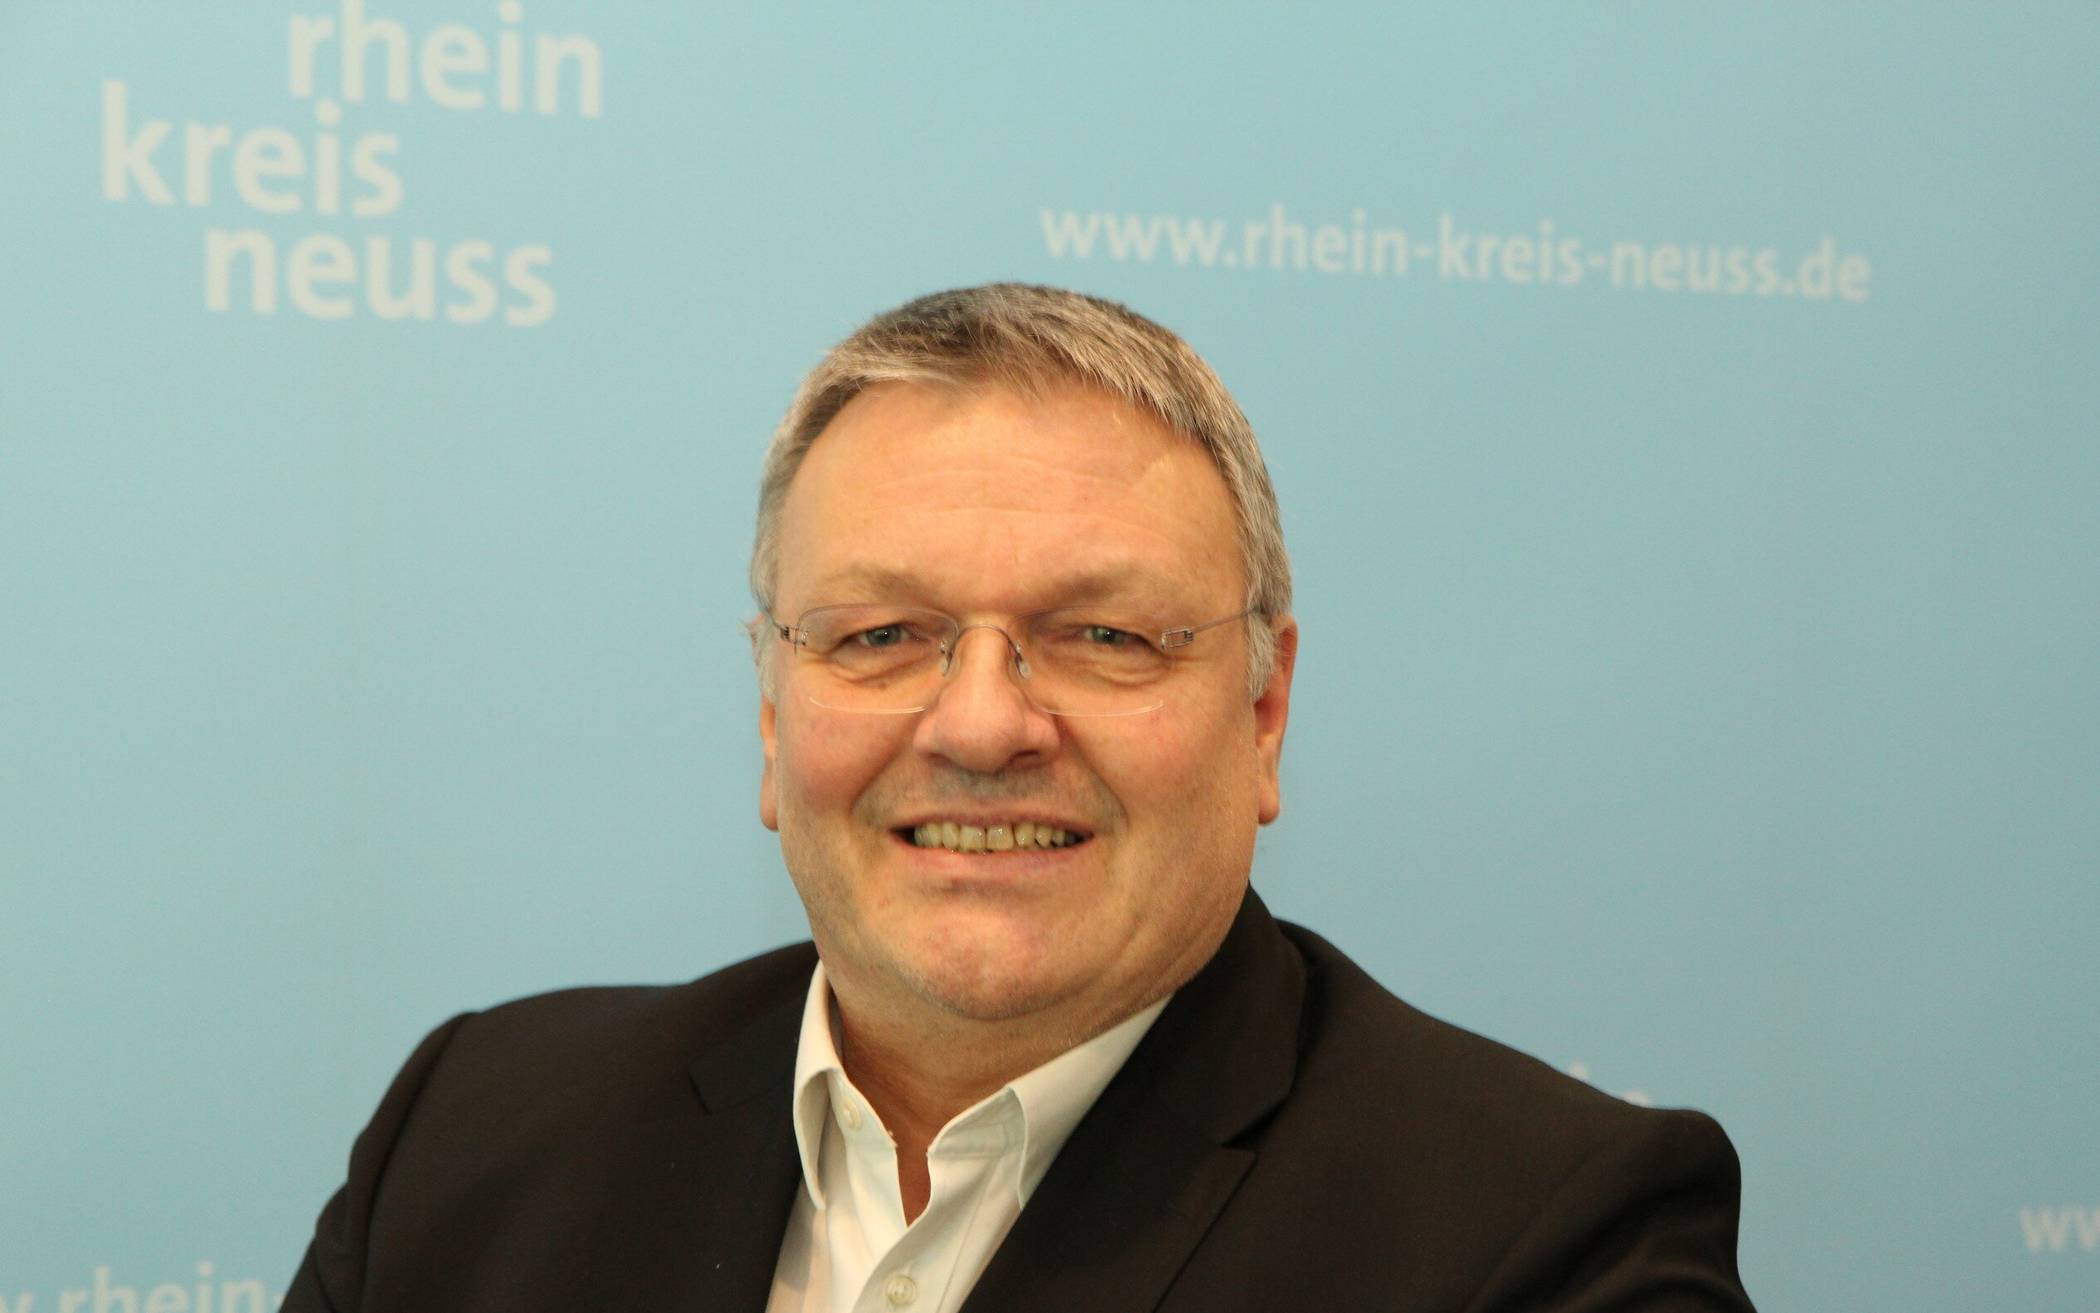  Das Kataster- und Vermessungsamt des Rhein-Kreises Neuss unter Leitung von Michael Fielenbach bietet jetzt ein virtuelles Bürgerbüro an. 